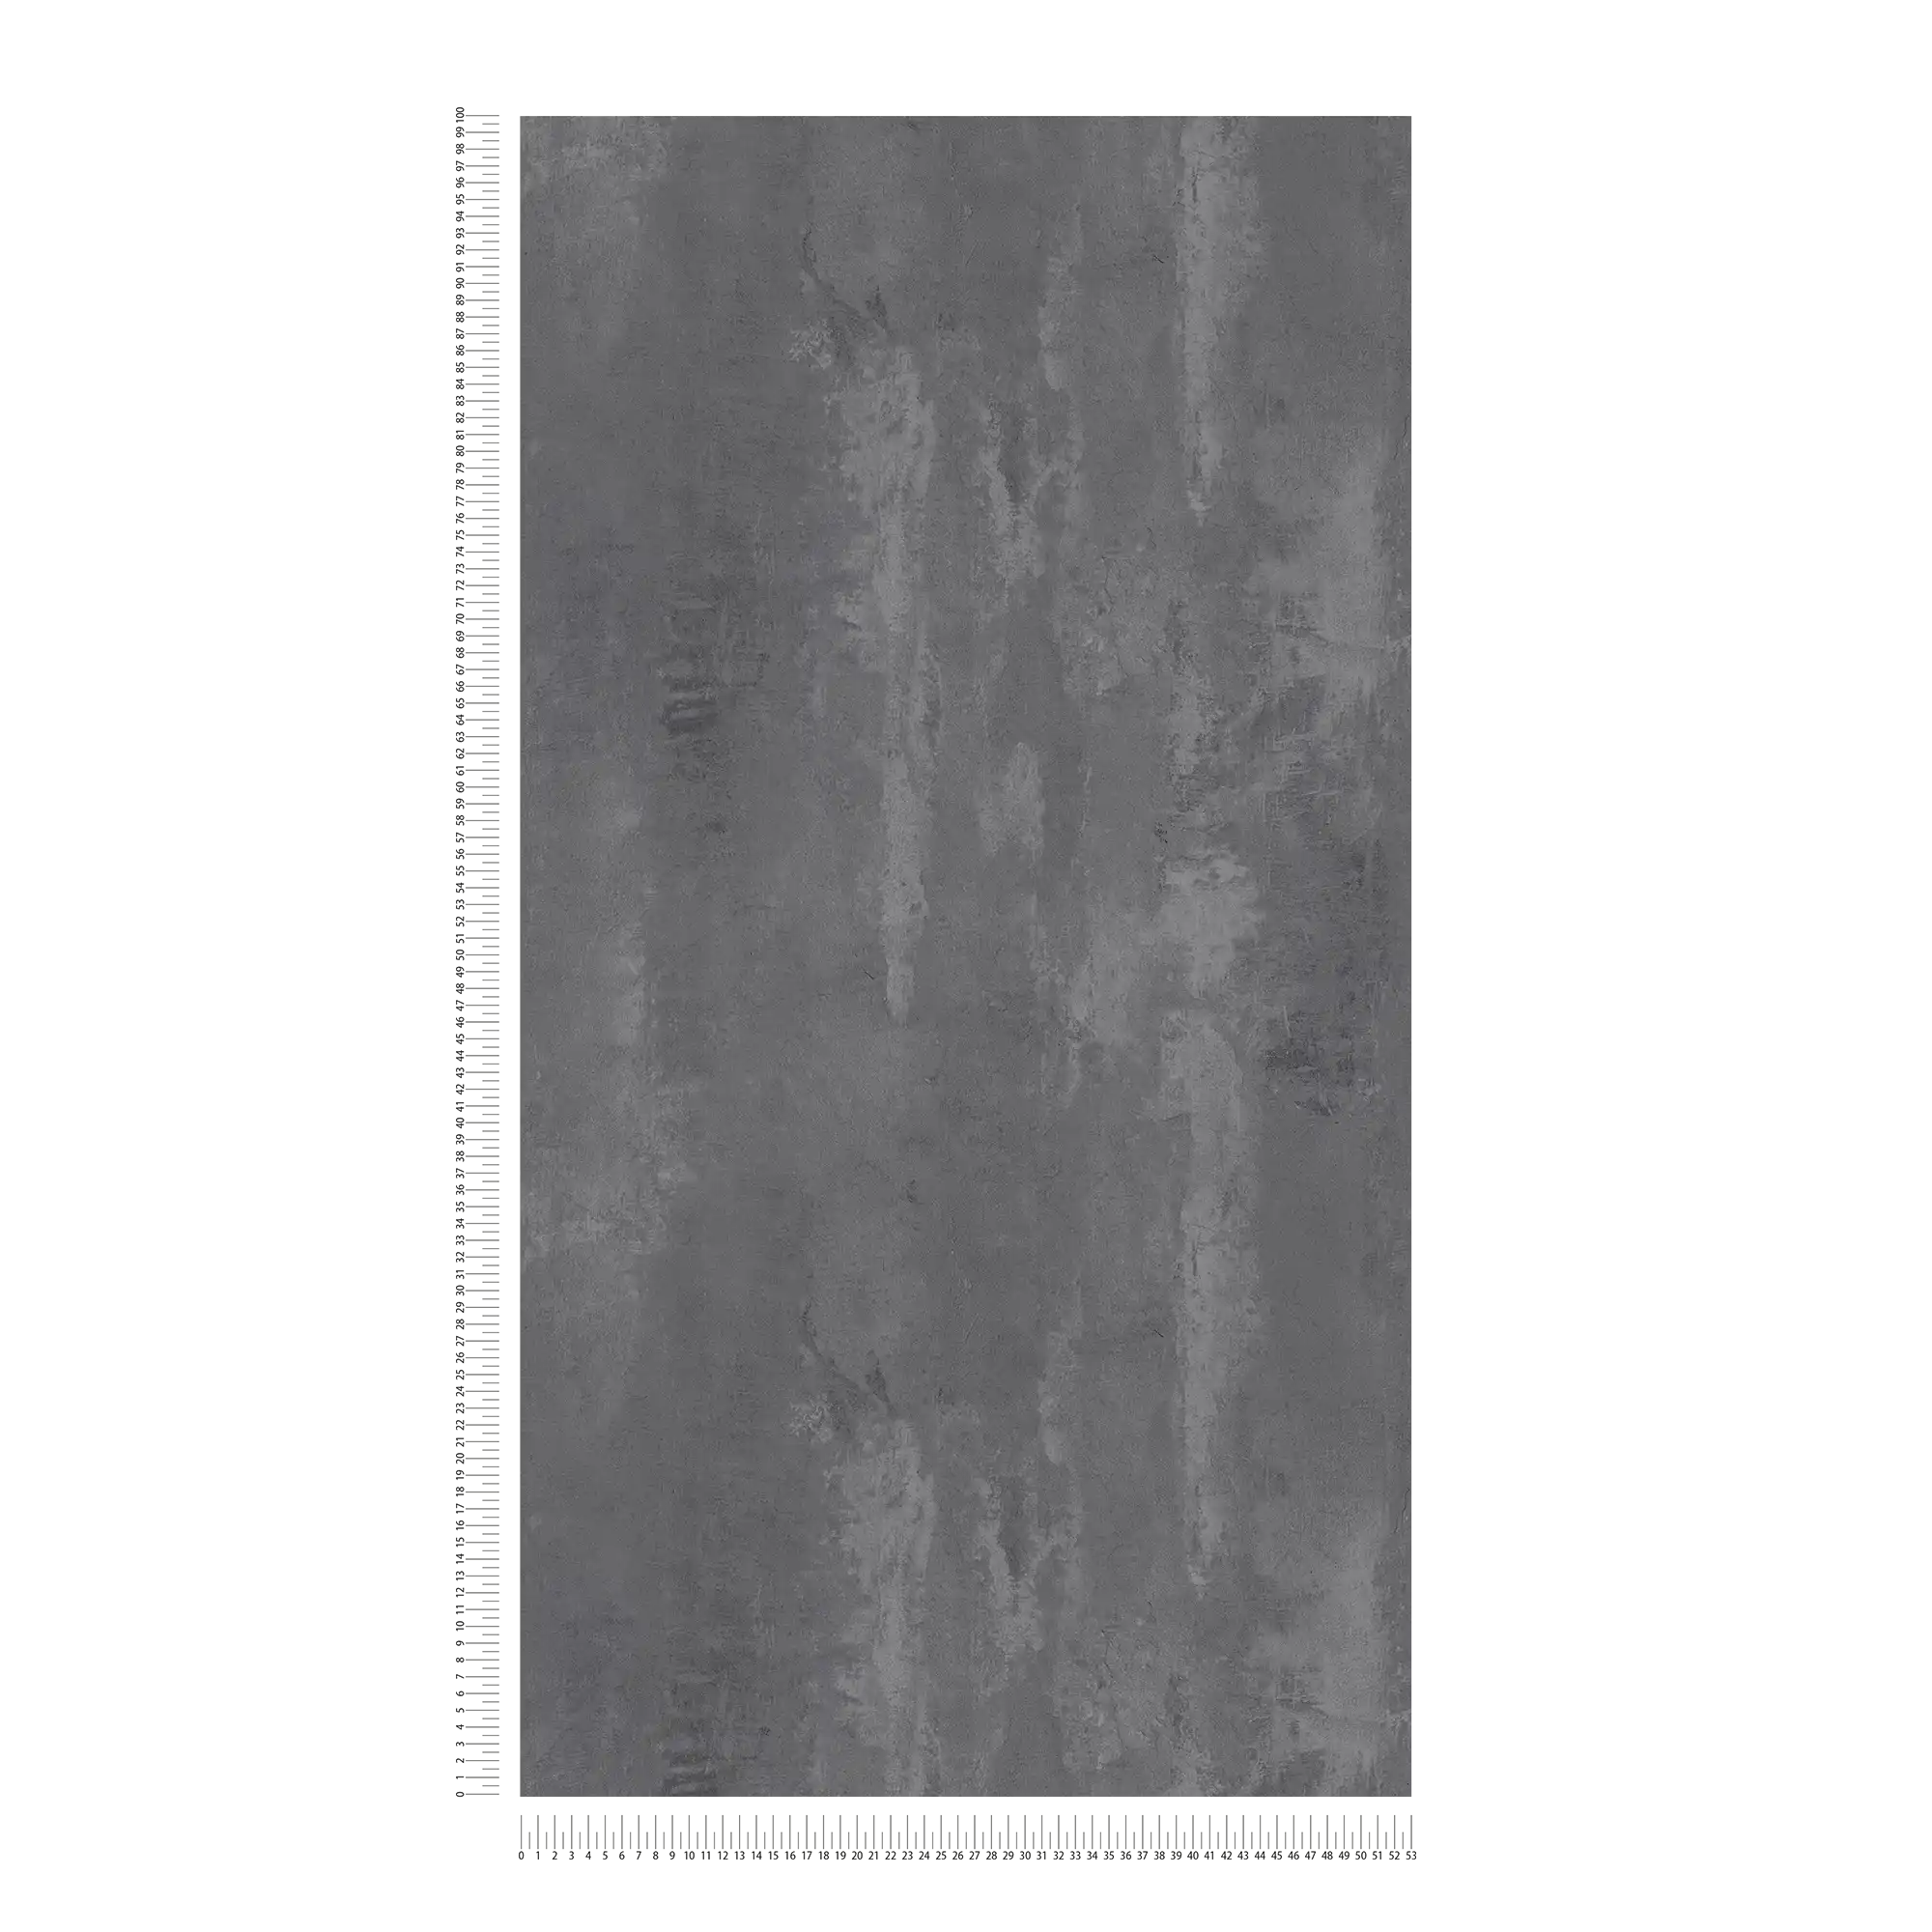             Carta da parati in cemento scuro con motivi rustici e stile industriale - grigio
        